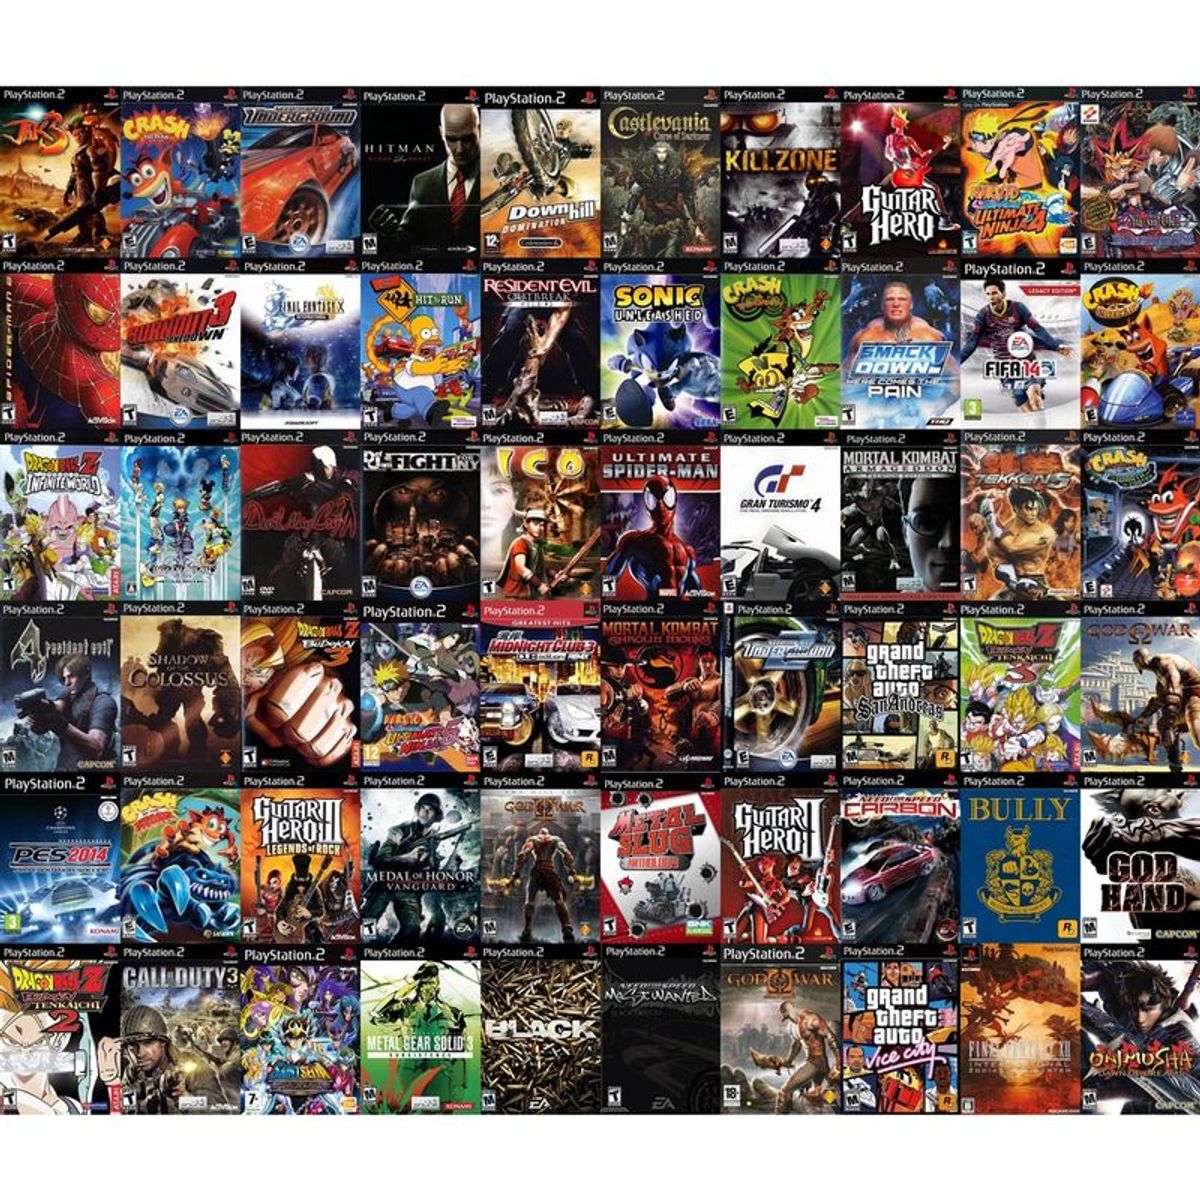 Pack 8 Jogos para PS2 ( Games à sua Escolha)